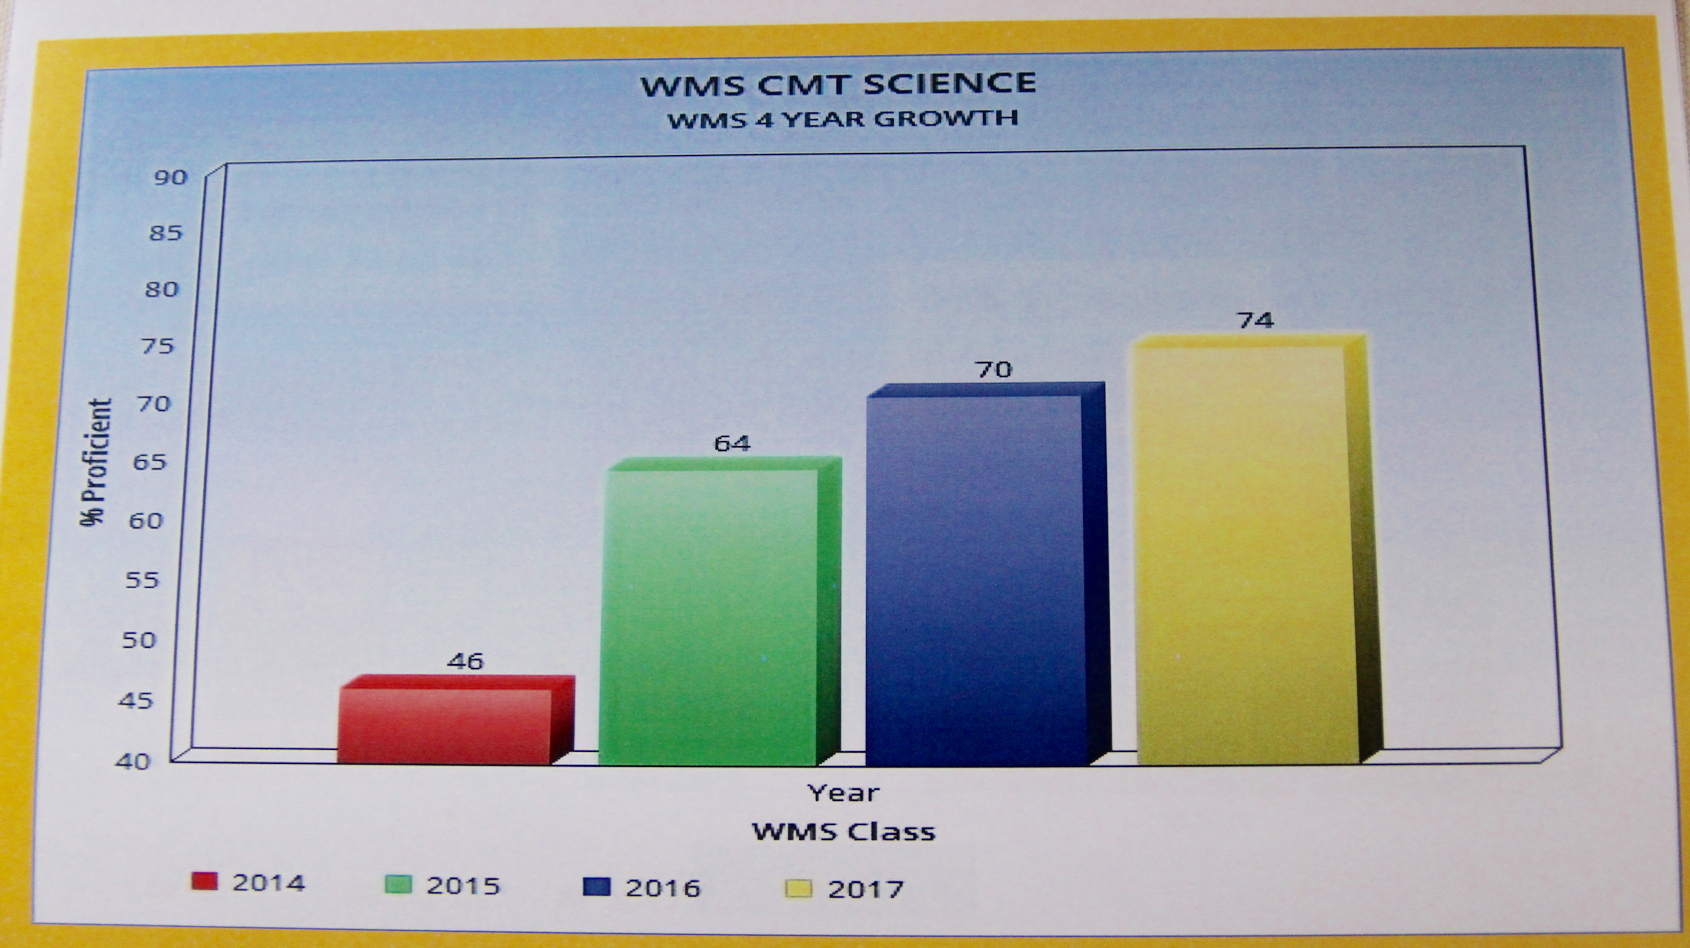 WMS CMT science scores